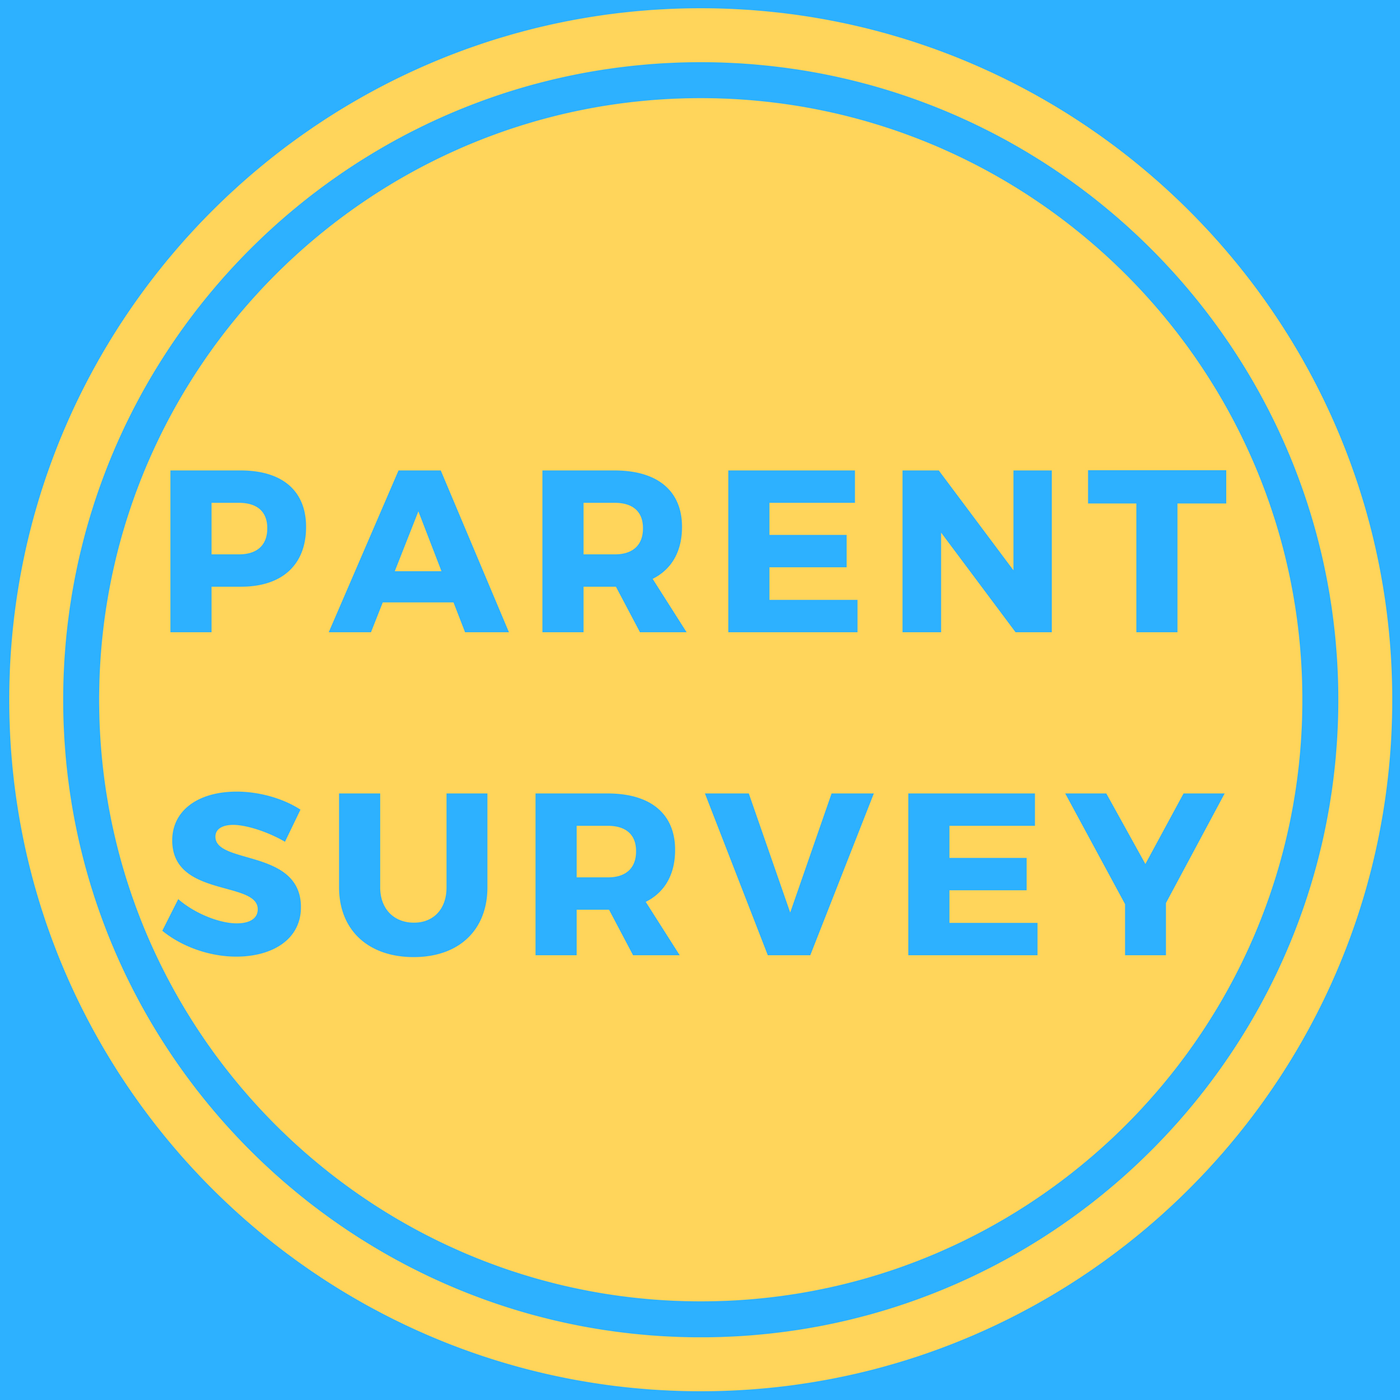  Parent Survey